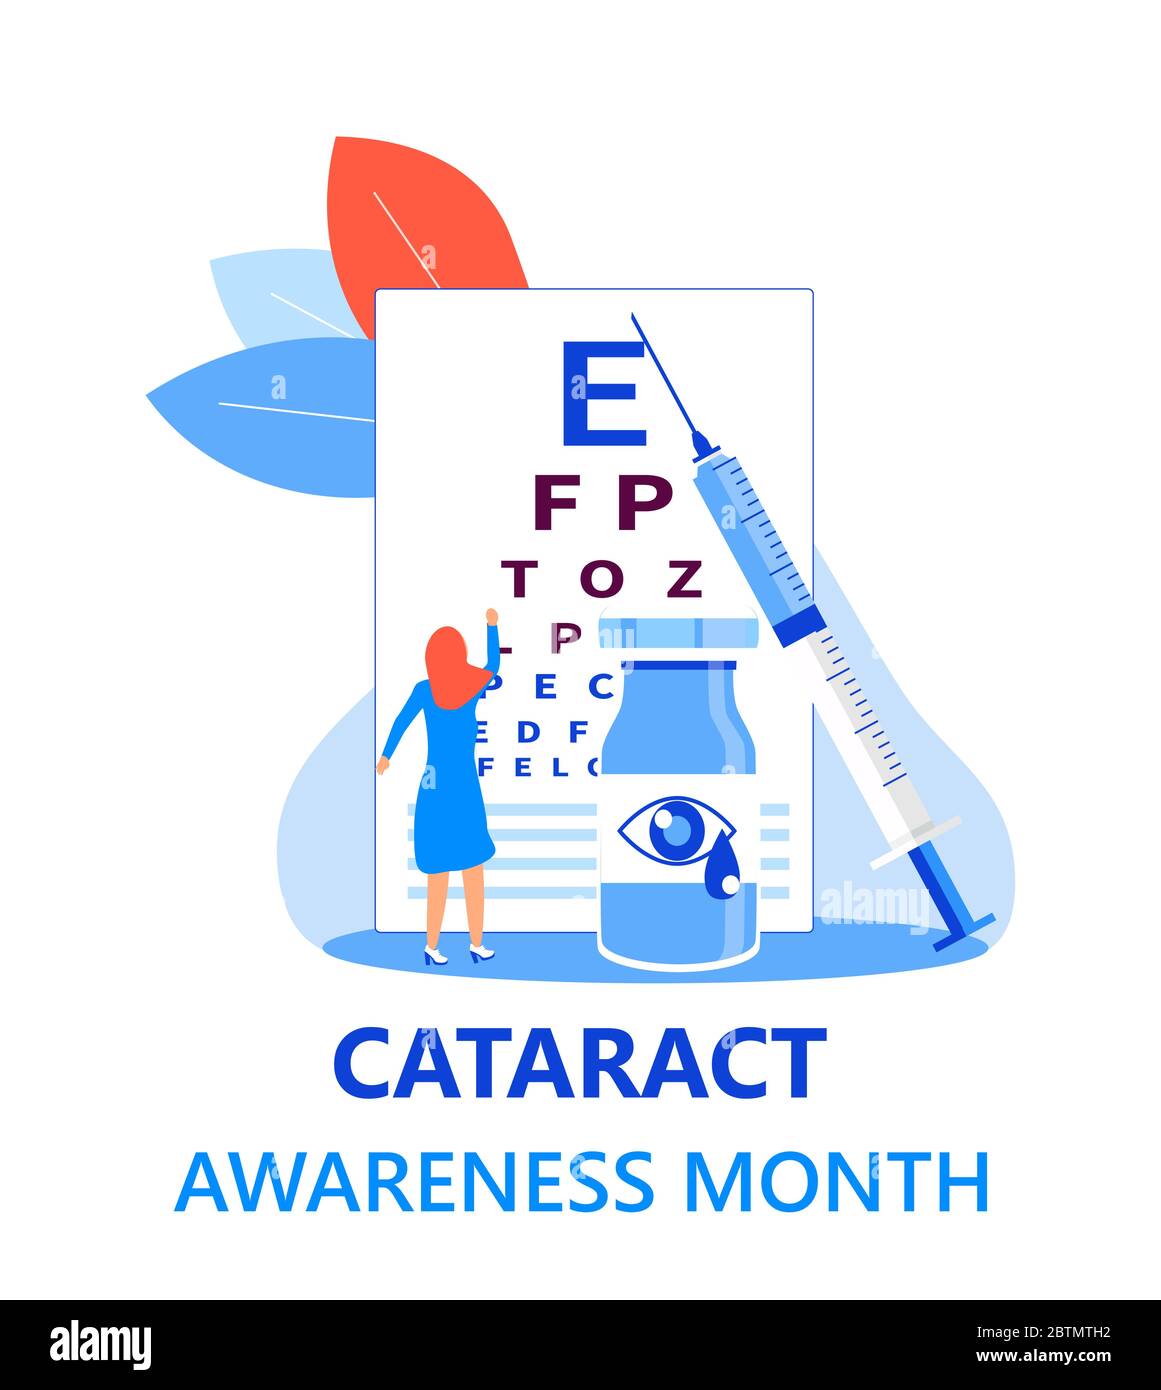 Der Monat der Katarakt-Sensibilisierung wird im Juni gefeiert. Glaukomerkrankungen und Nephropathie Probleme. Abbildung des ophthalmologischen Konzepts. Augenkontrolle mit Witz Stock Vektor